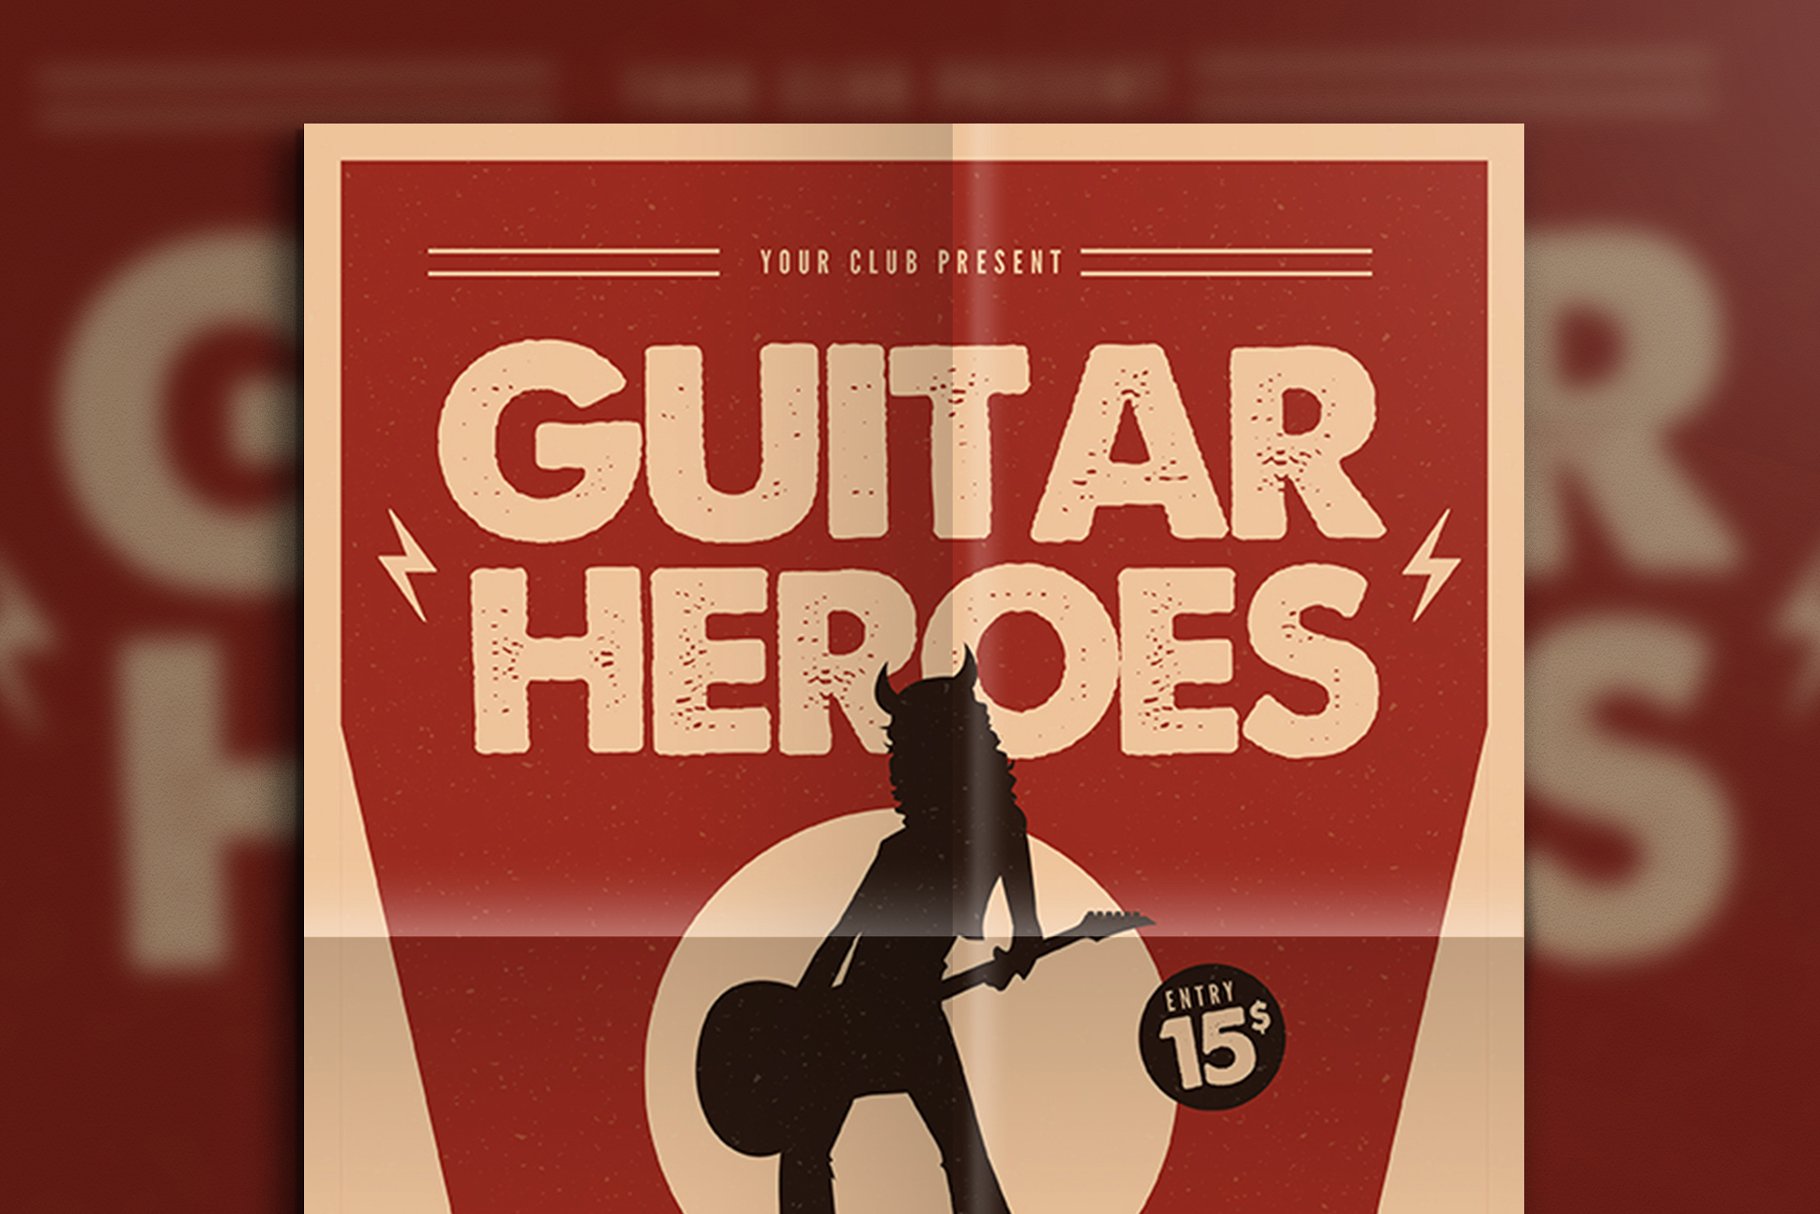 吉他英雄海报图片 Guitar Heroes Flyer #